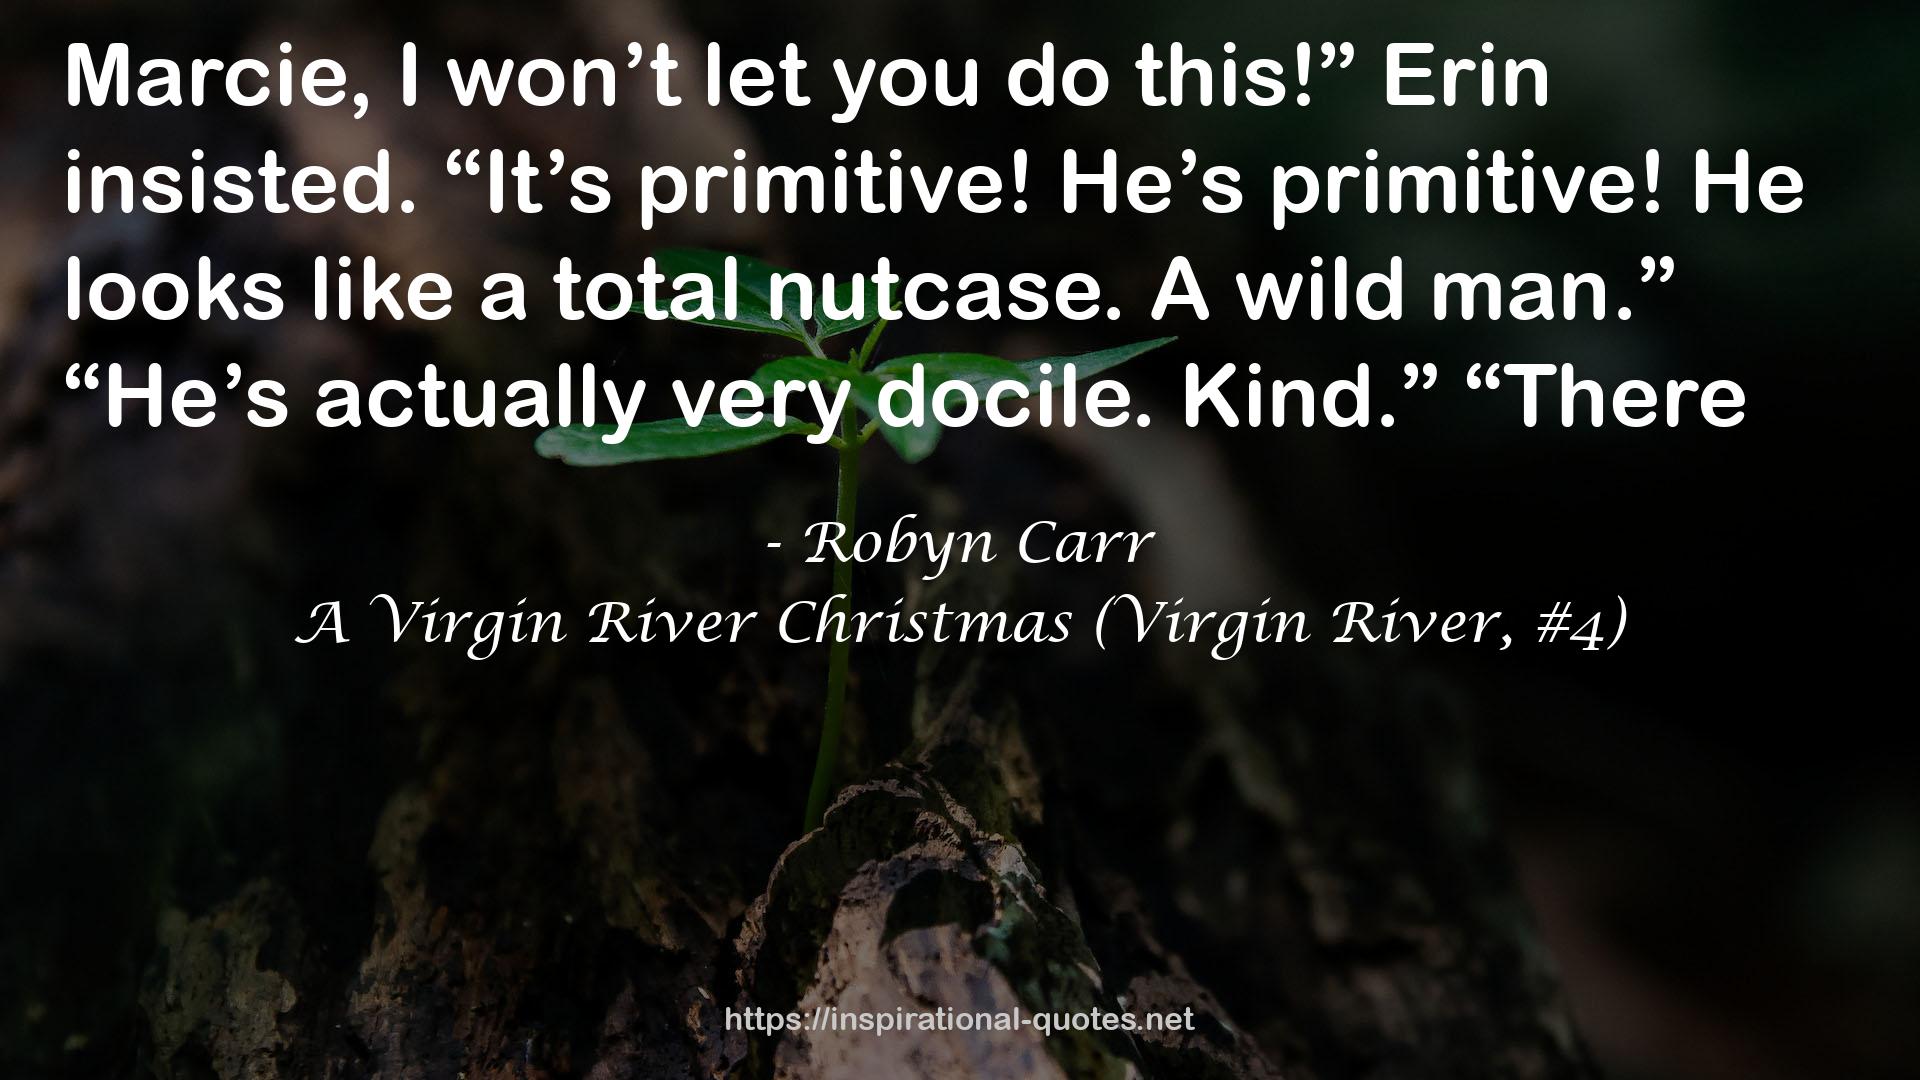 A Virgin River Christmas (Virgin River, #4) QUOTES